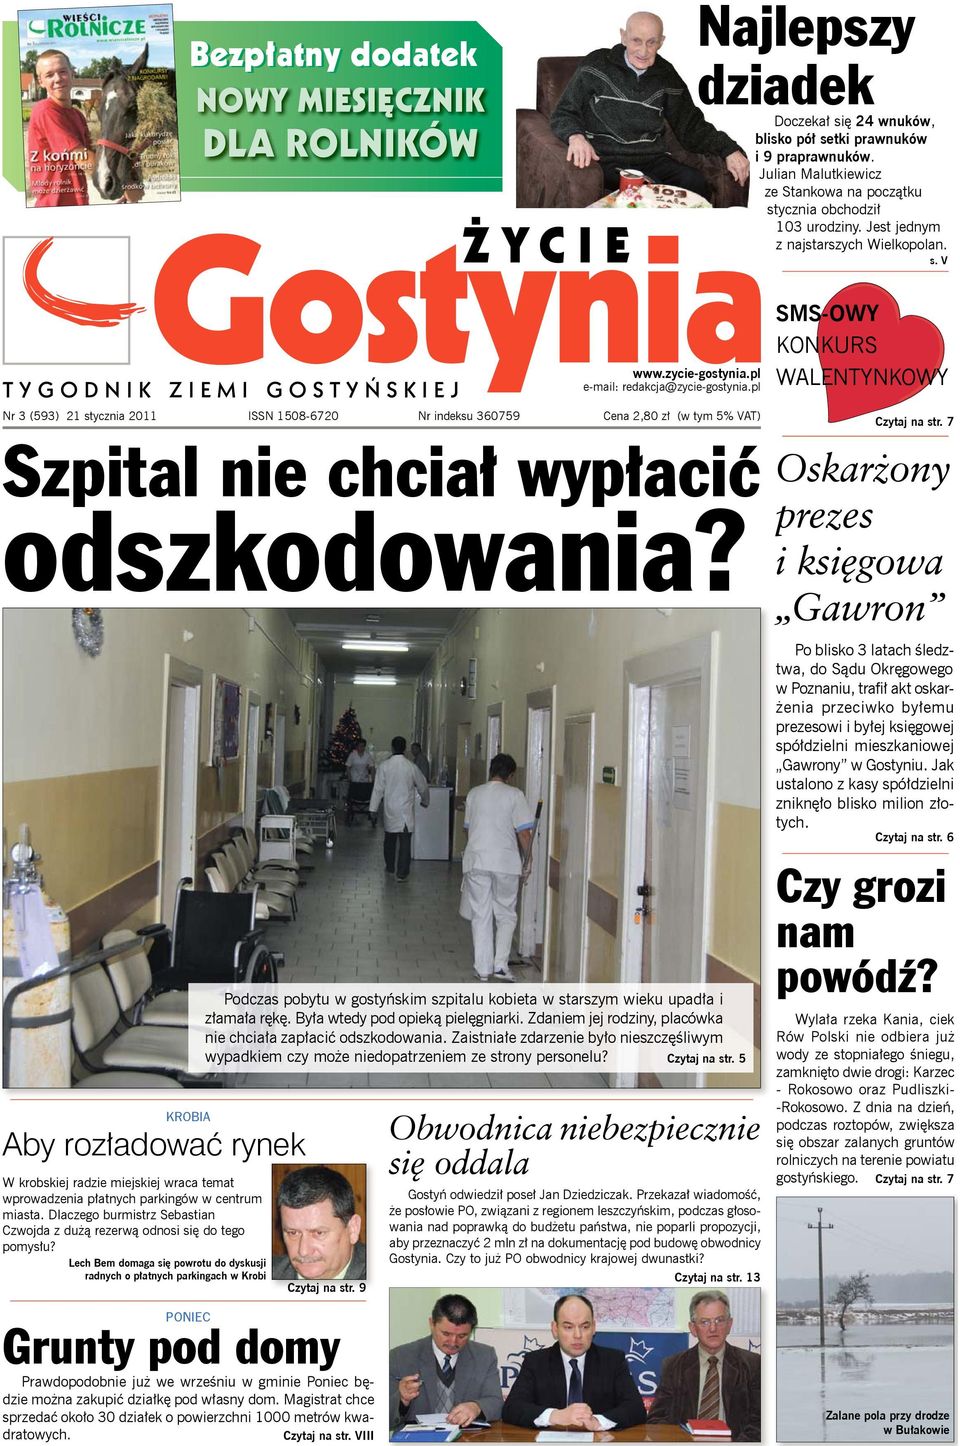 pl Nr ISSN 1508-6720 Nr indeksu 360759 Cena 2,80 zł (w tym 5% VAT) Szpital nie chciał wypłacić odszkodowania?